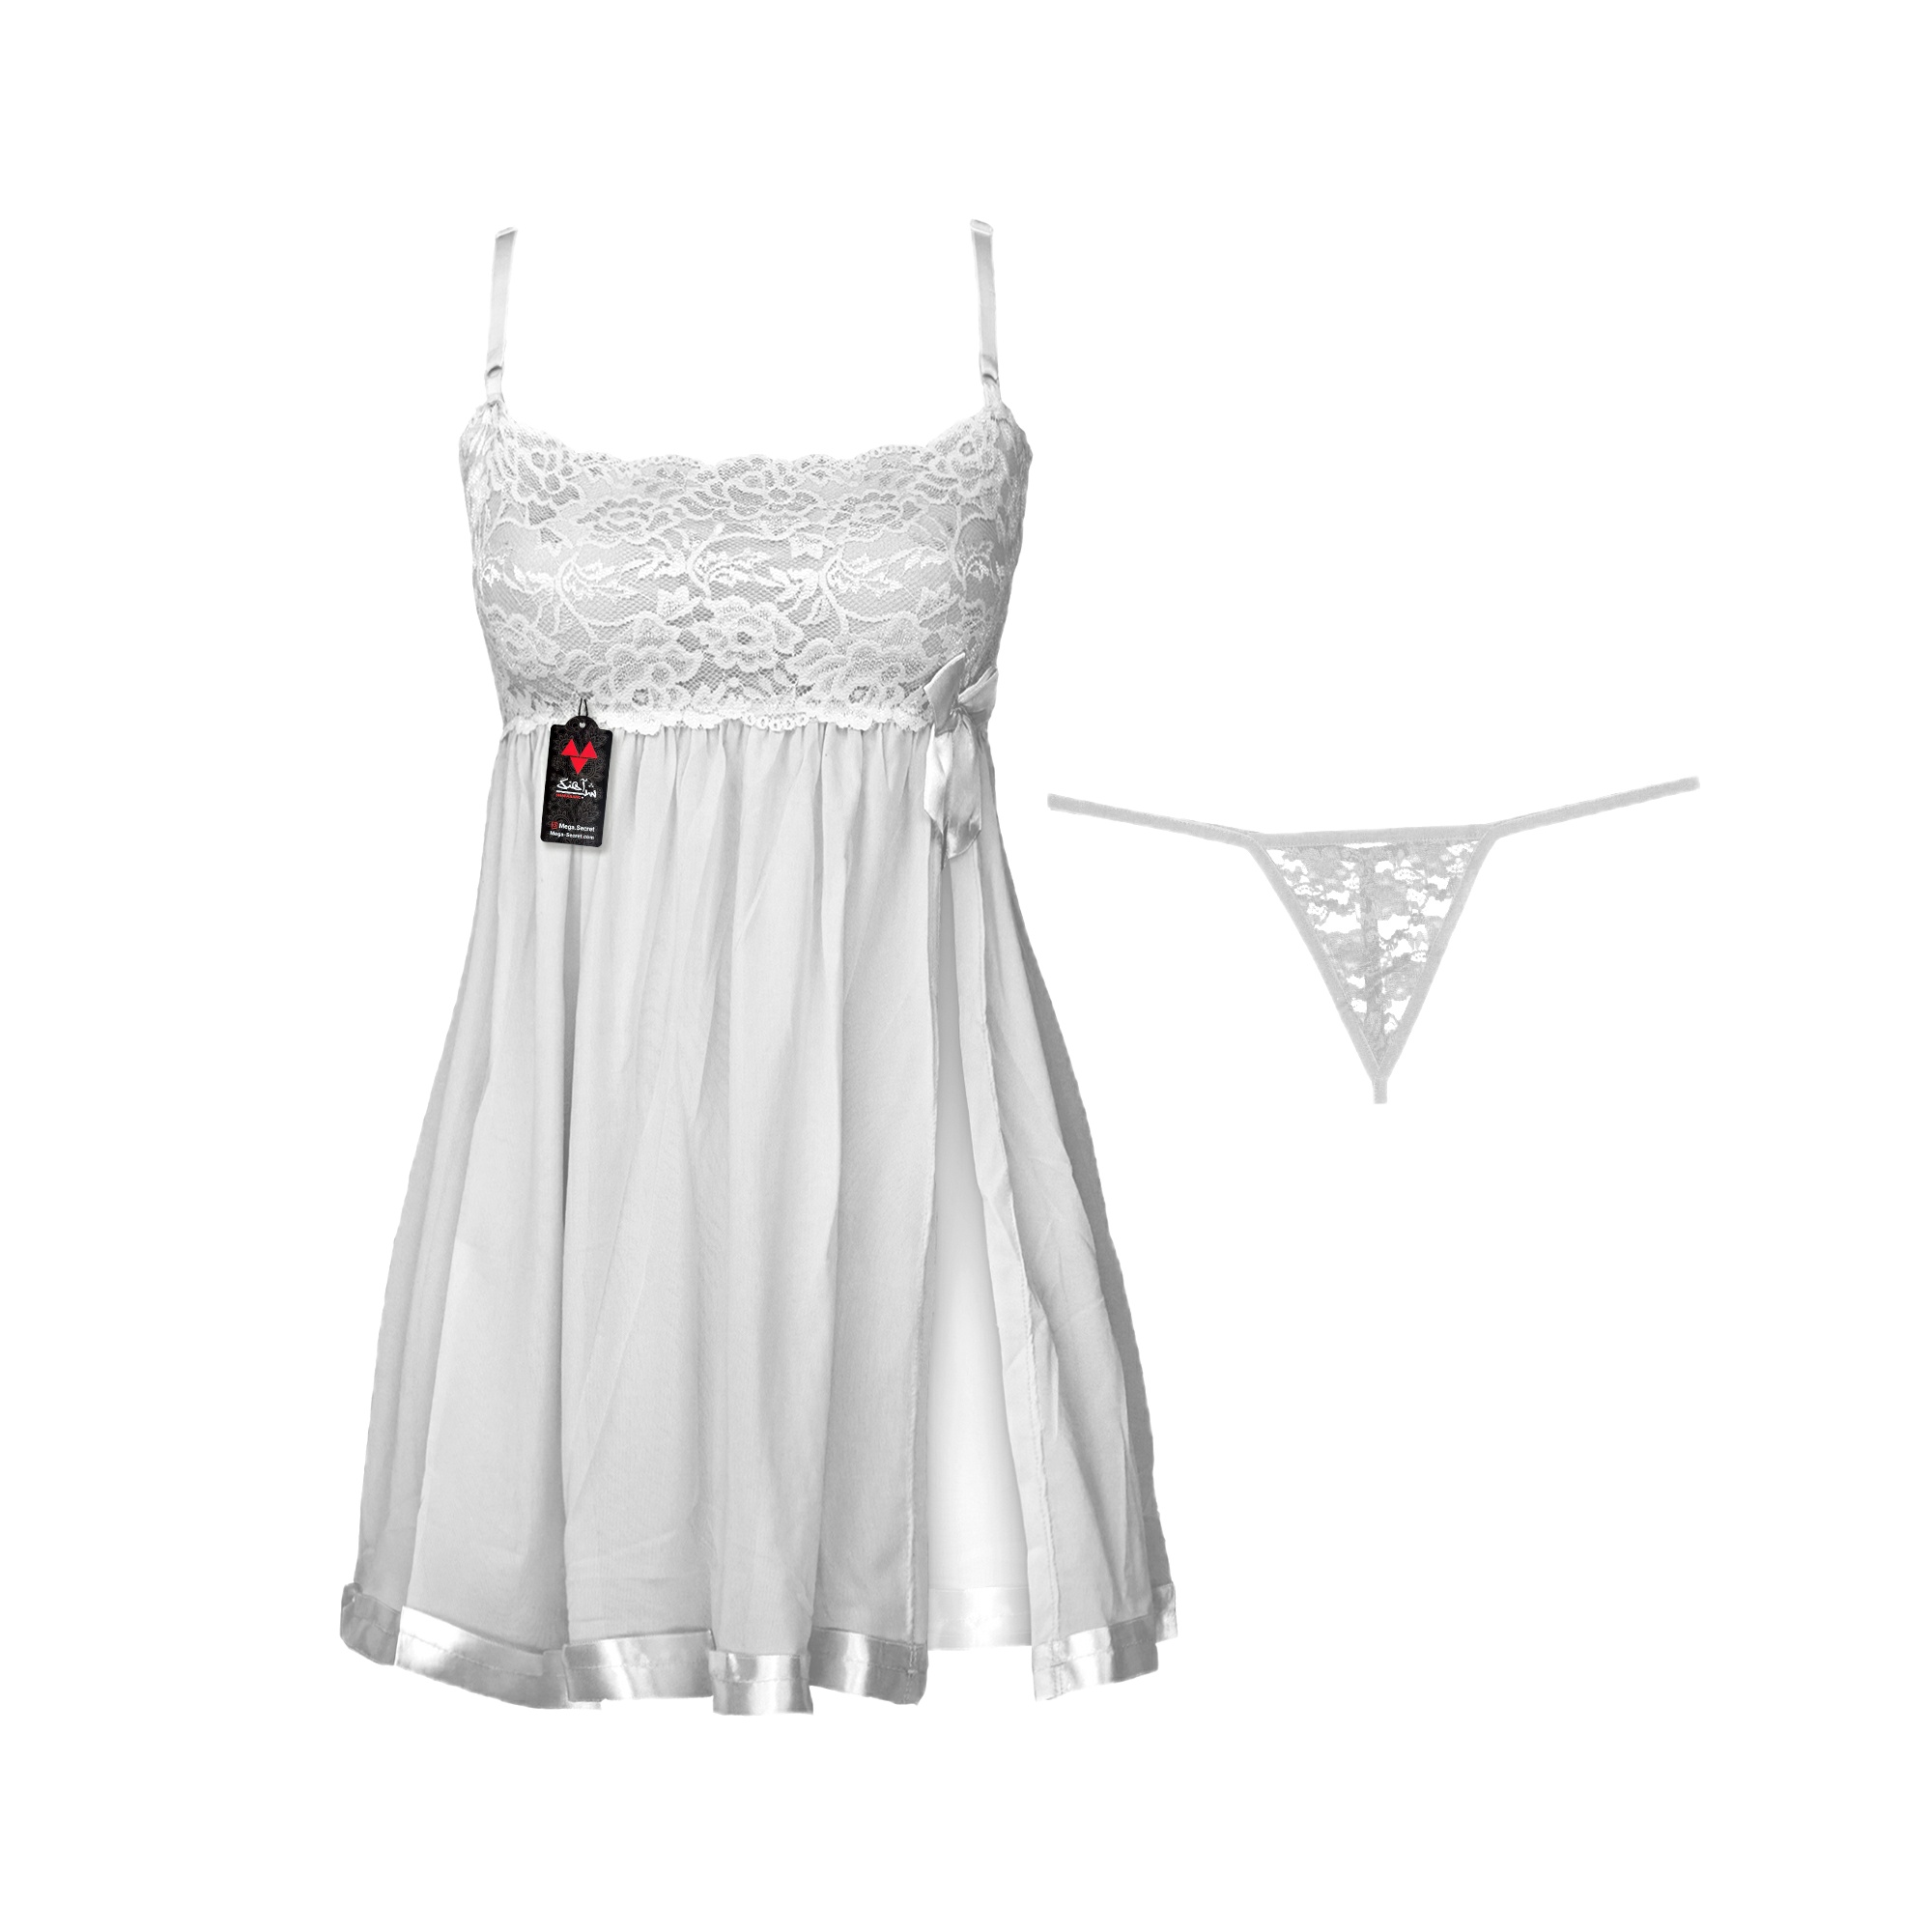 لباس خواب زنانه شباهنگ مدل New PRINCESS رنگ سفید